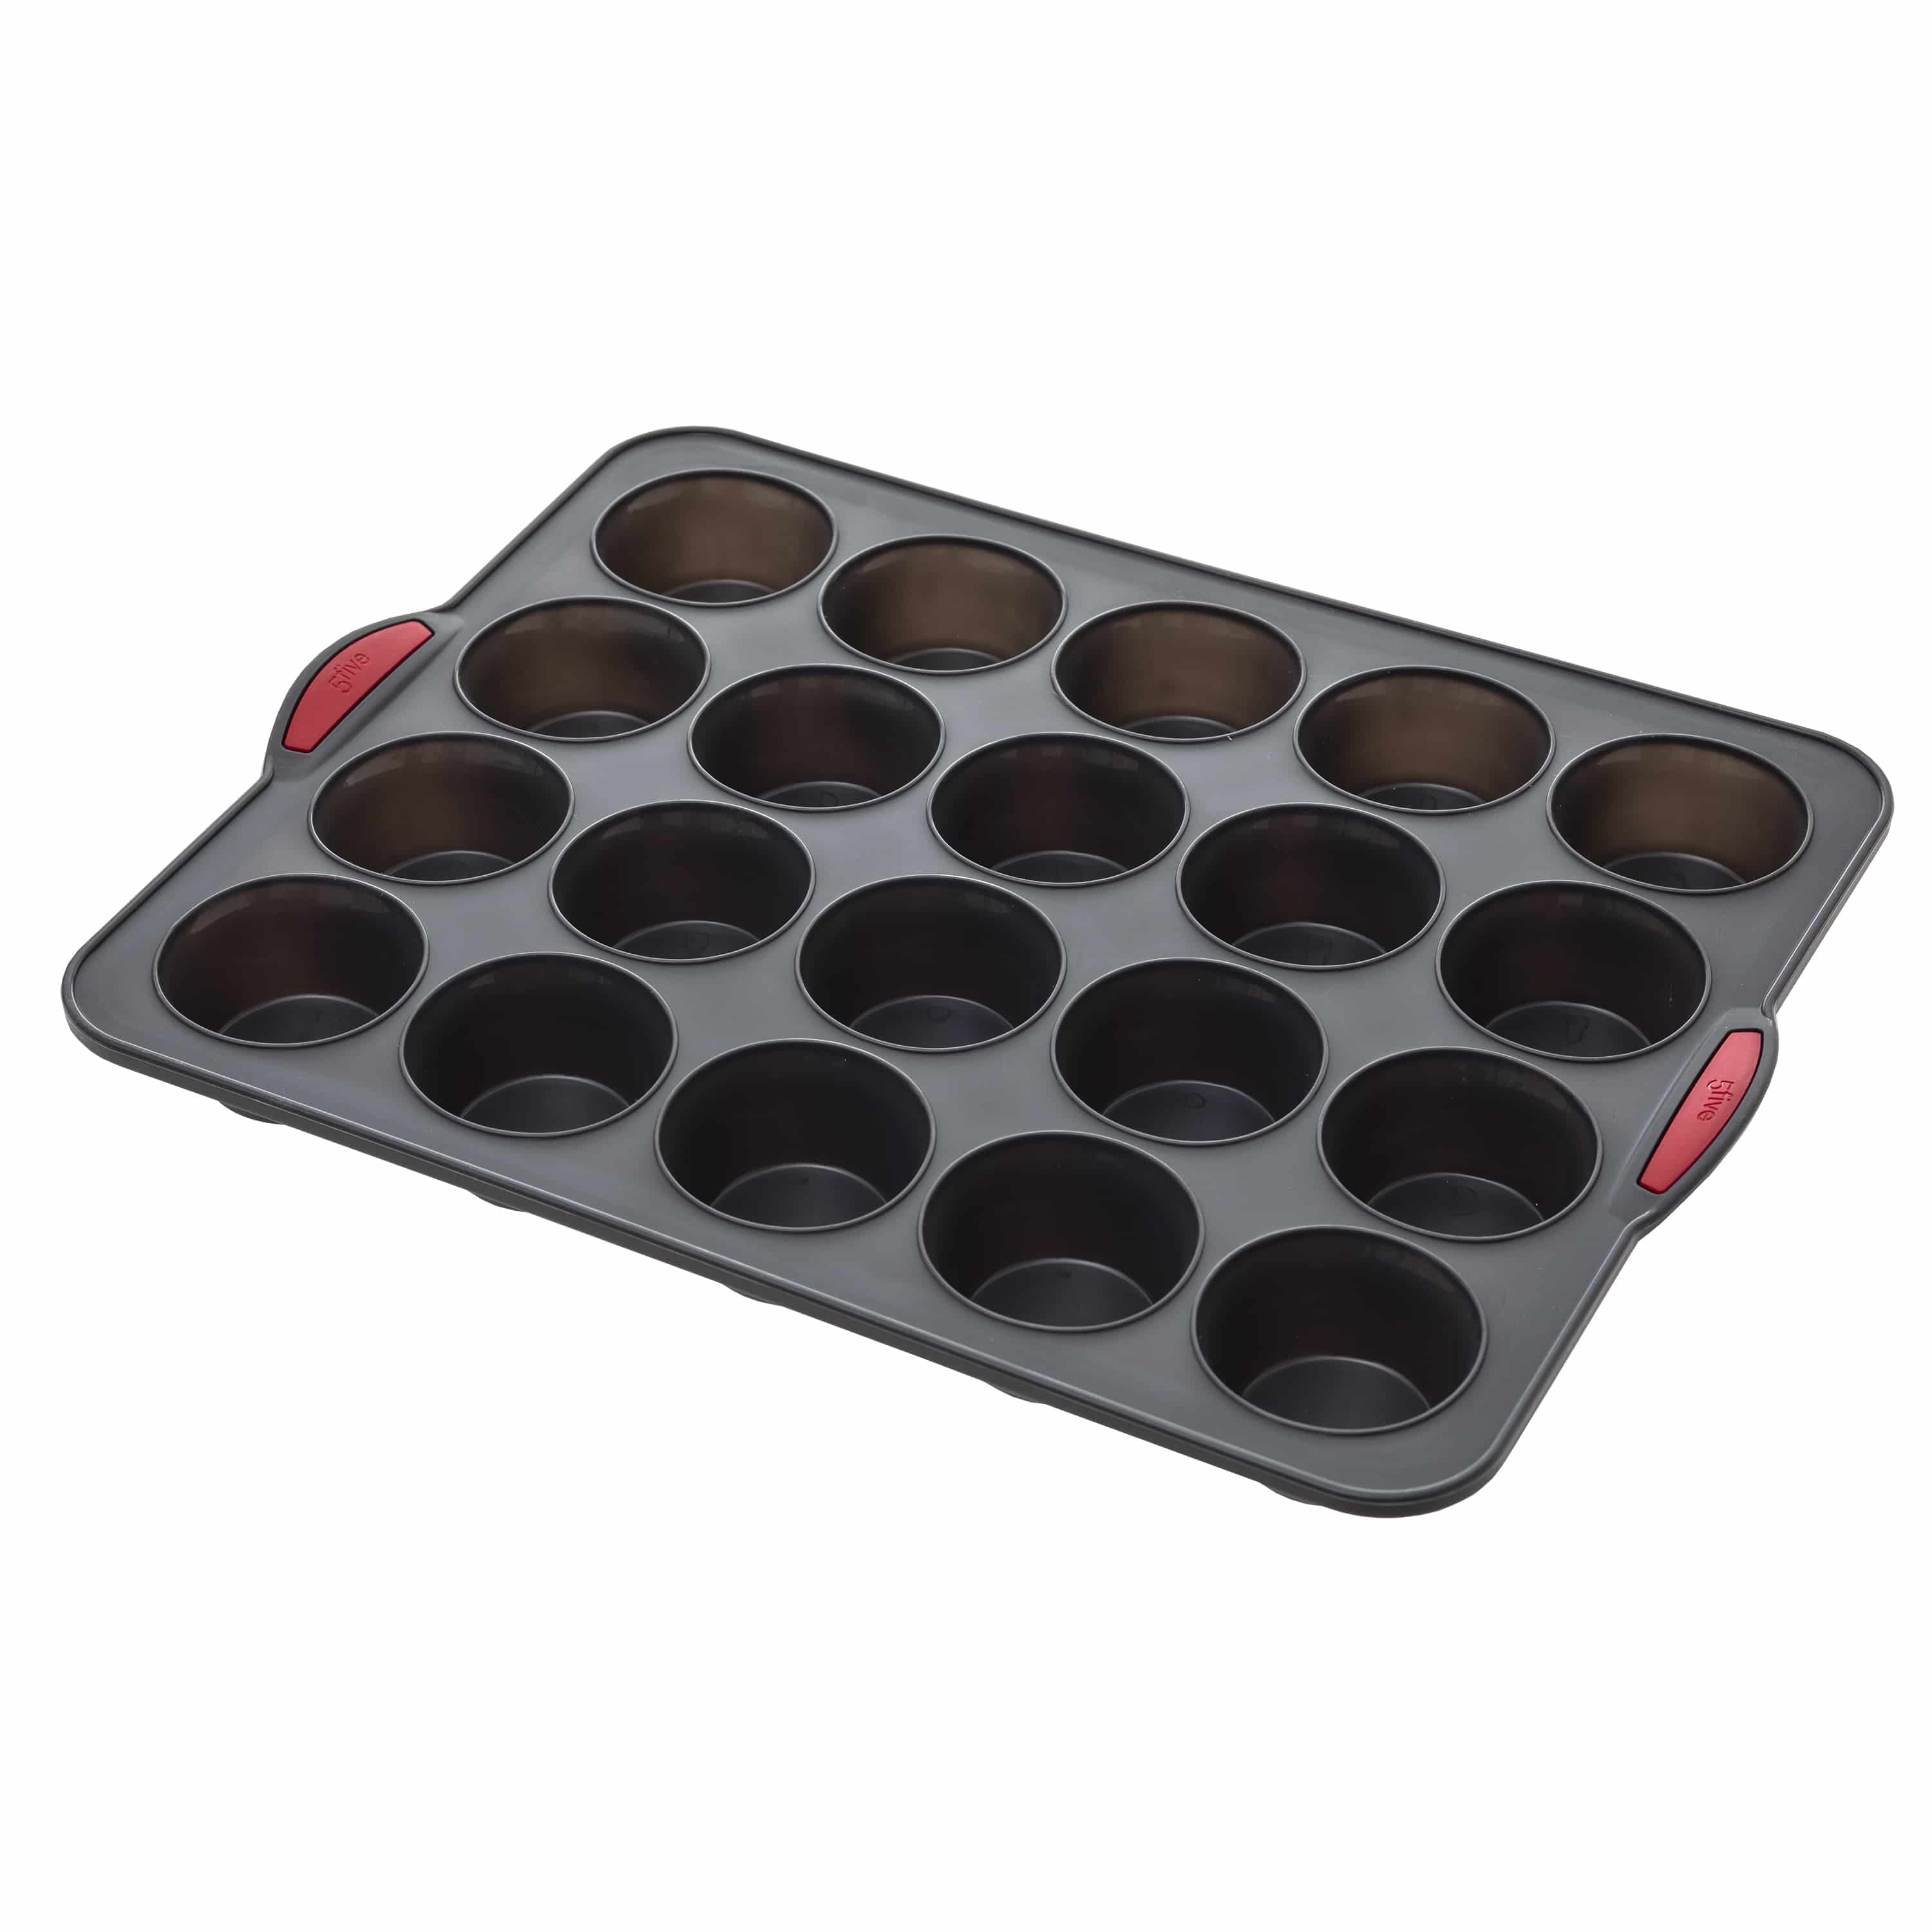 4goodz Siliconen Bakvorm 20 muffins met vaste randen - 30,5x40x3,7 cm